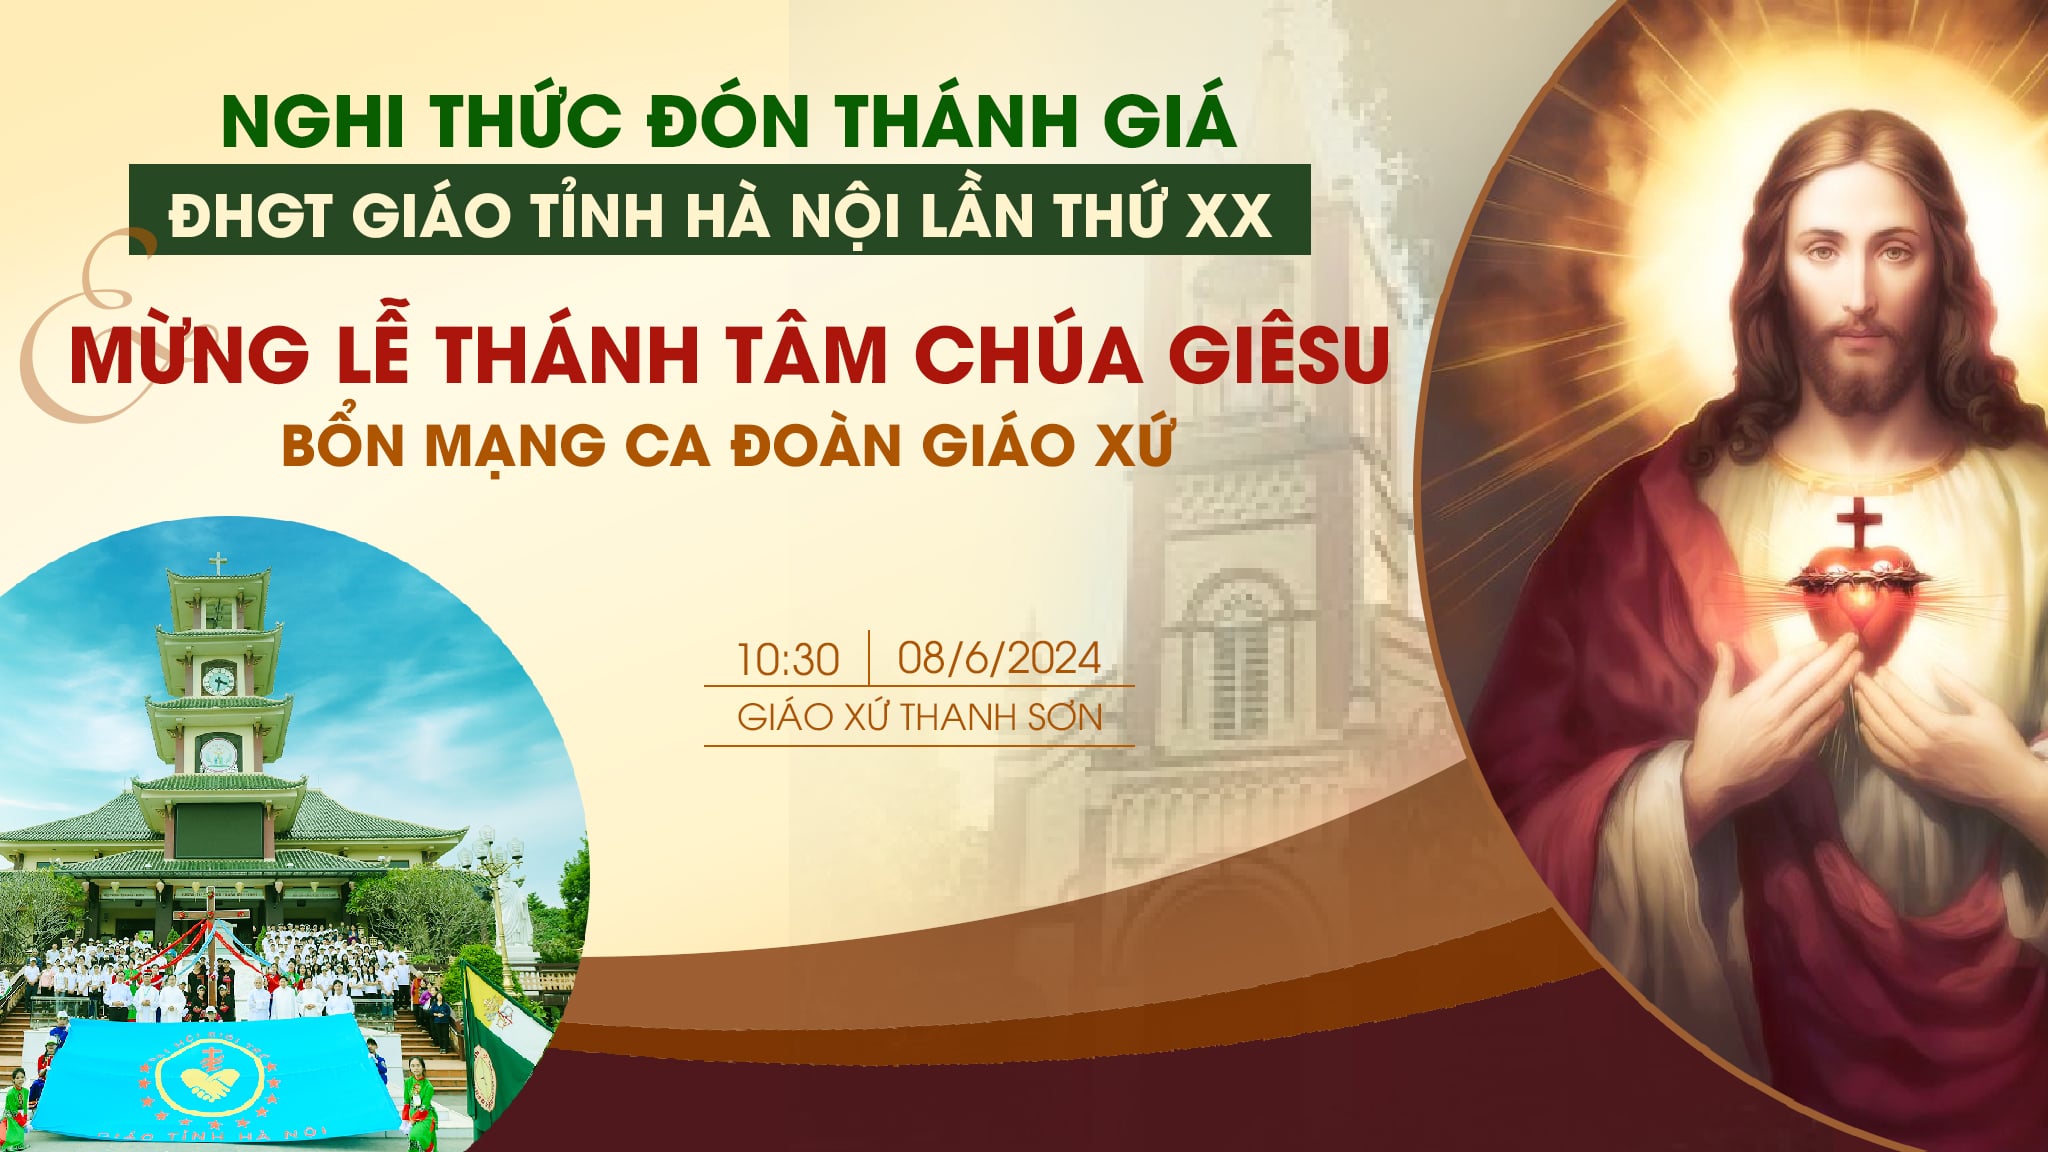 Giáo hạt Cao Bằng: Đón Thánh giá Đại hội Giới trẻ Giáo tỉnh Hà Nội